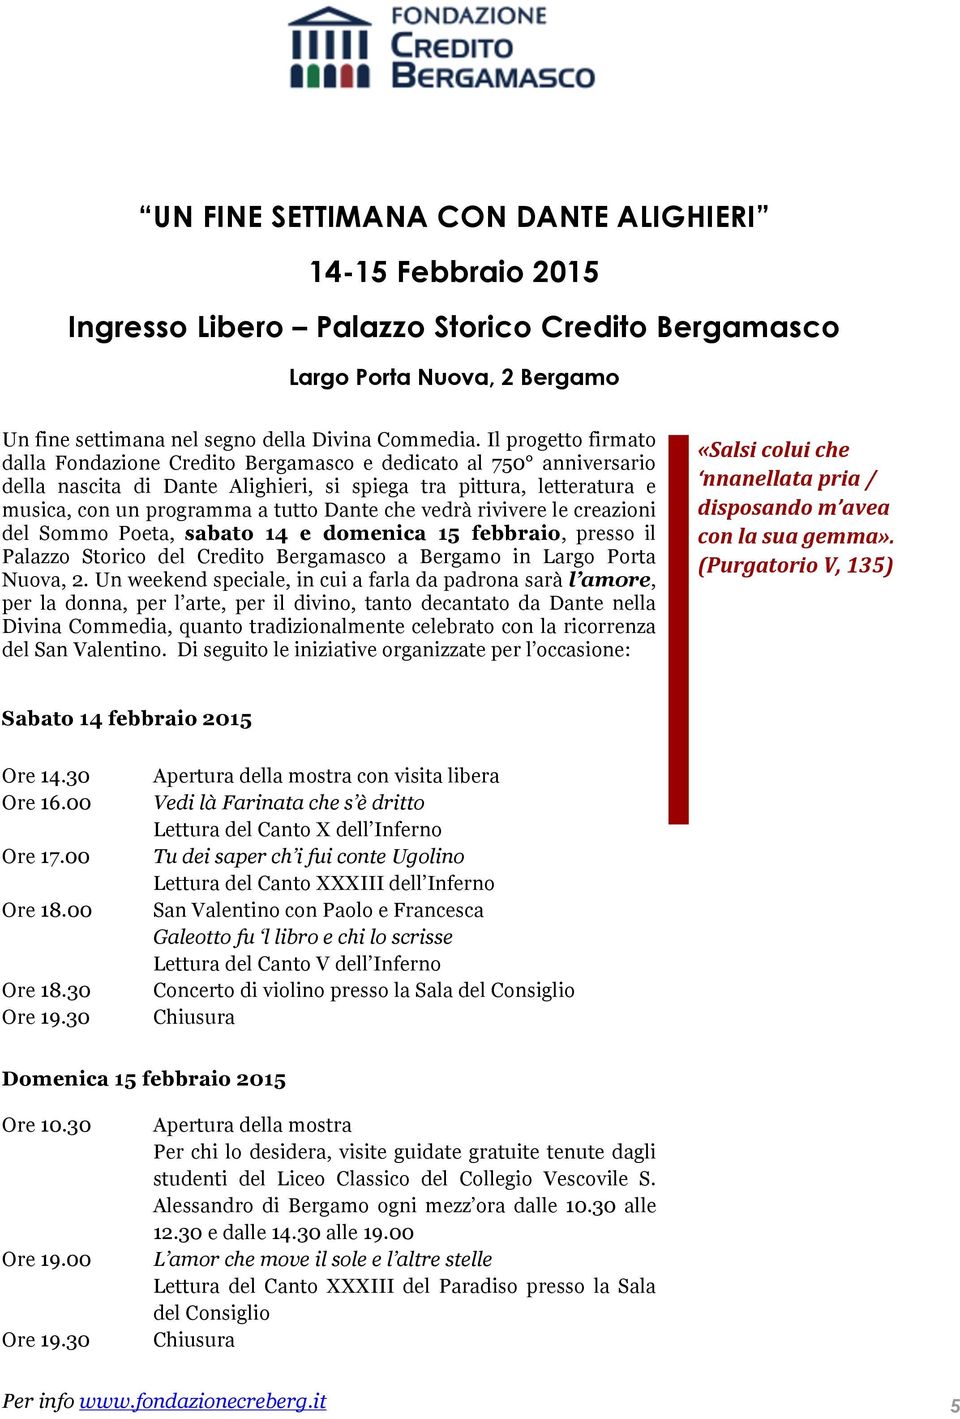 che vedrà rivivere le creazioni del Sommo Poeta, sabato 14 e domenica 15 febbraio, presso il Palazzo Storico del Credito Bergamasco a Bergamo in Largo Porta Nuova, 2.